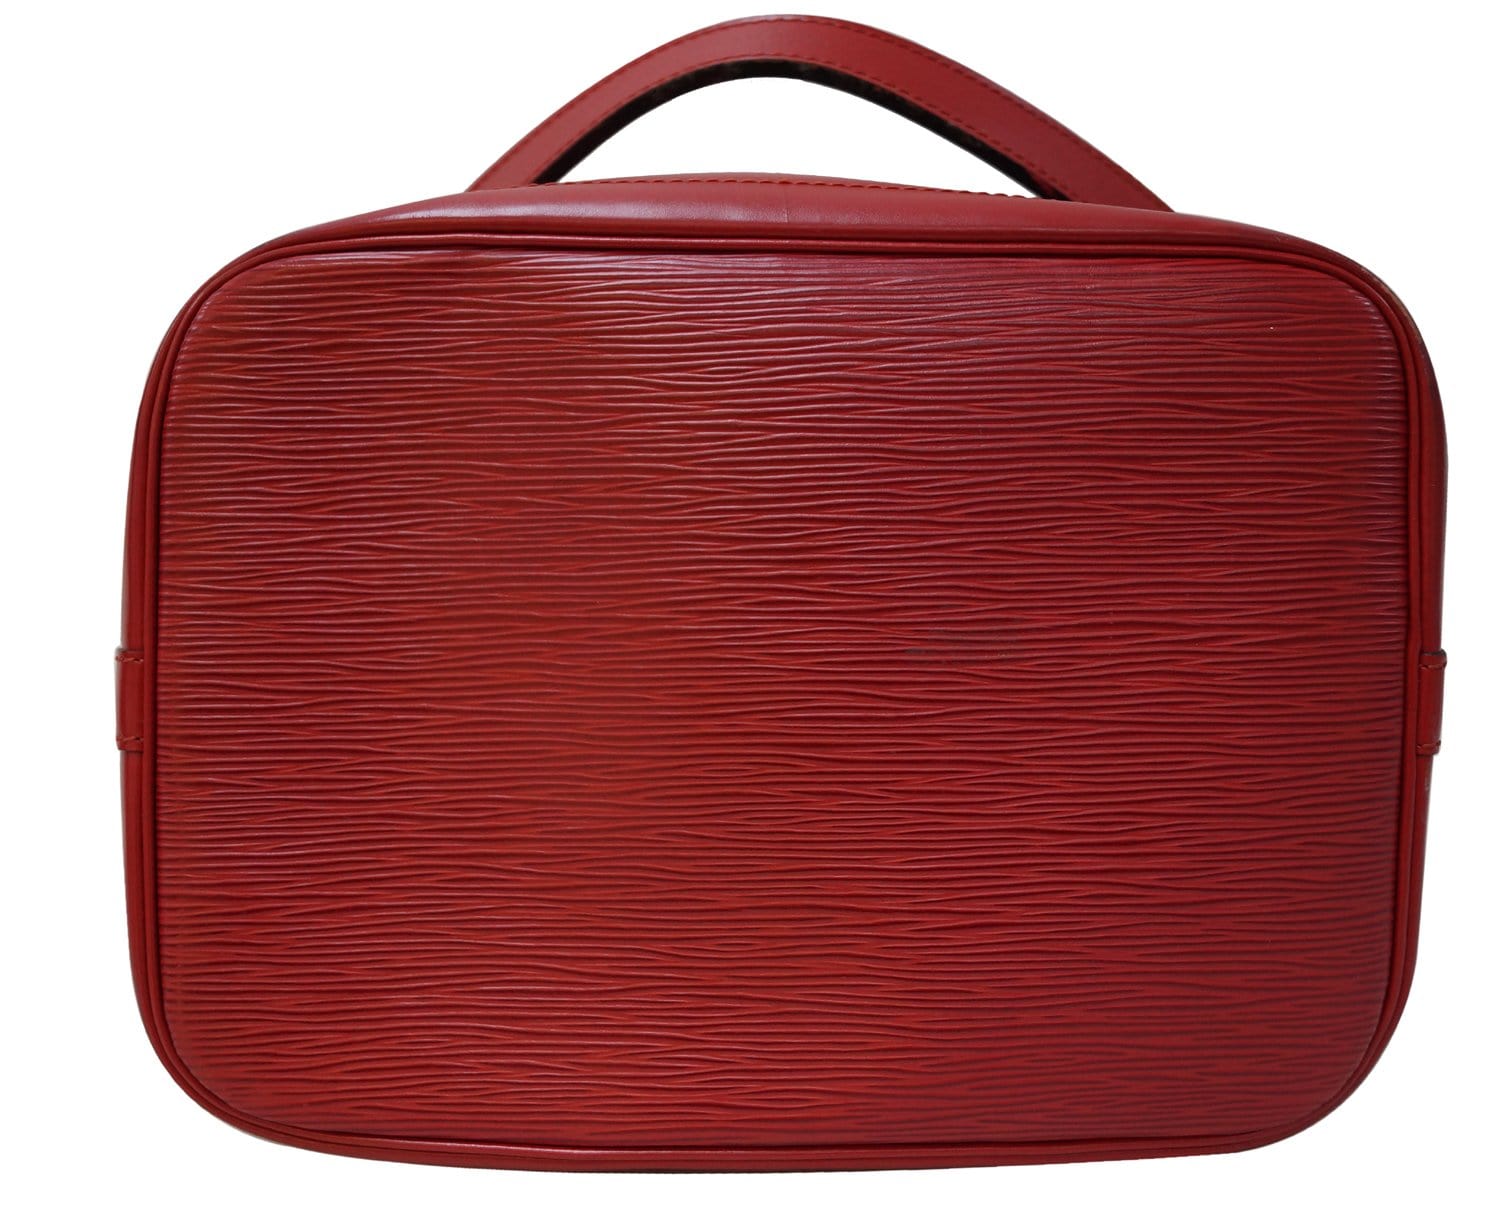 Buy [Bag] LOUIS VUITTON Louis Vuitton Epi Noe Shoulder Bag One Shoulder  Drawstring Bicolor 2 Tone Noir Castilian Red M44017 from Japan - Buy  authentic Plus exclusive items from Japan